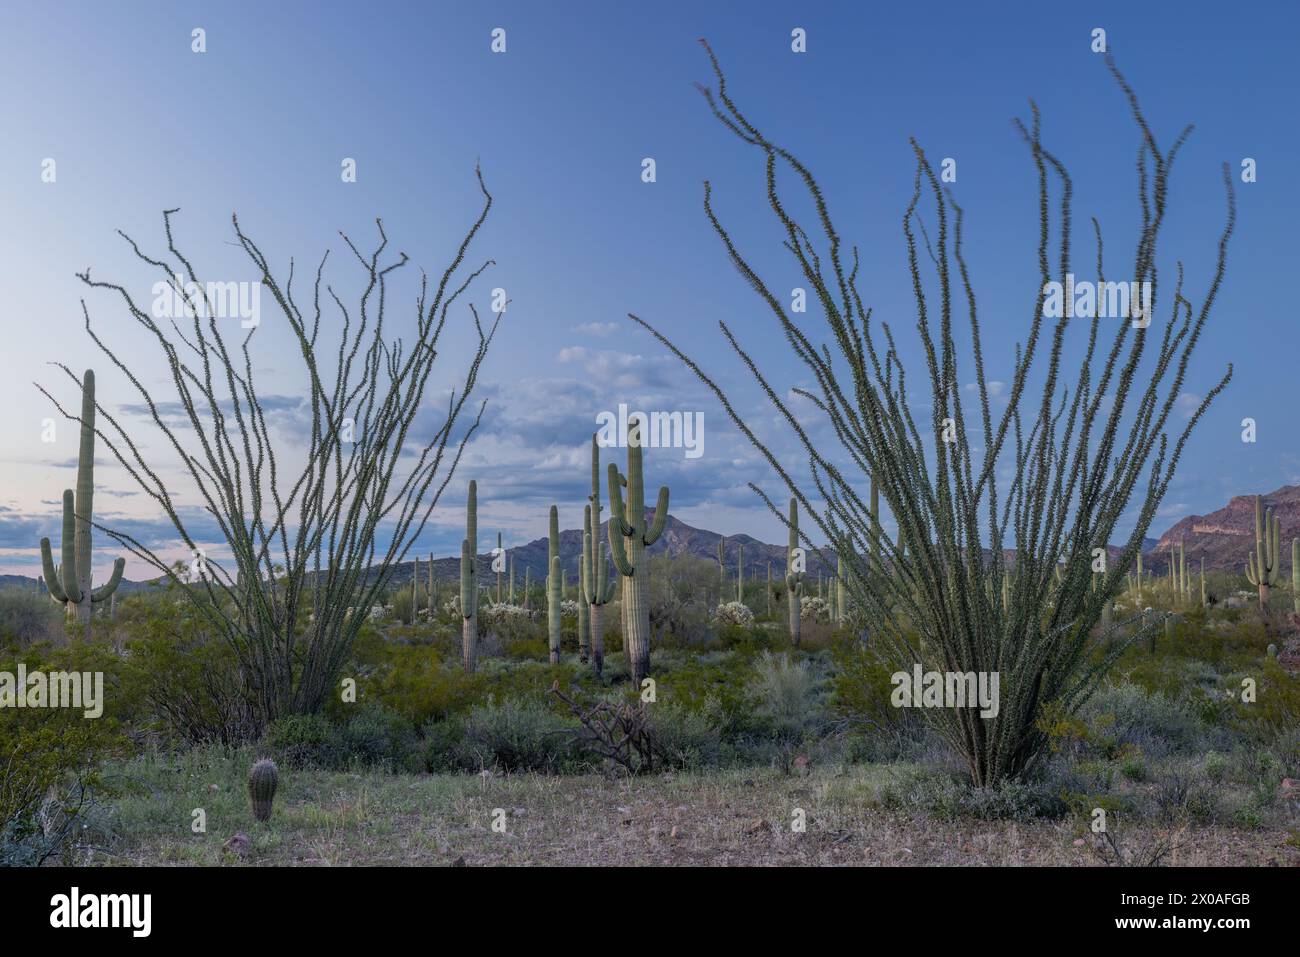 Ocotillo (Fouquieria splendens) and saguaro cacti (Carnegiea gigantea) in the evening, Organ Pipe Cactus National Monument, Arizona Stock Photo